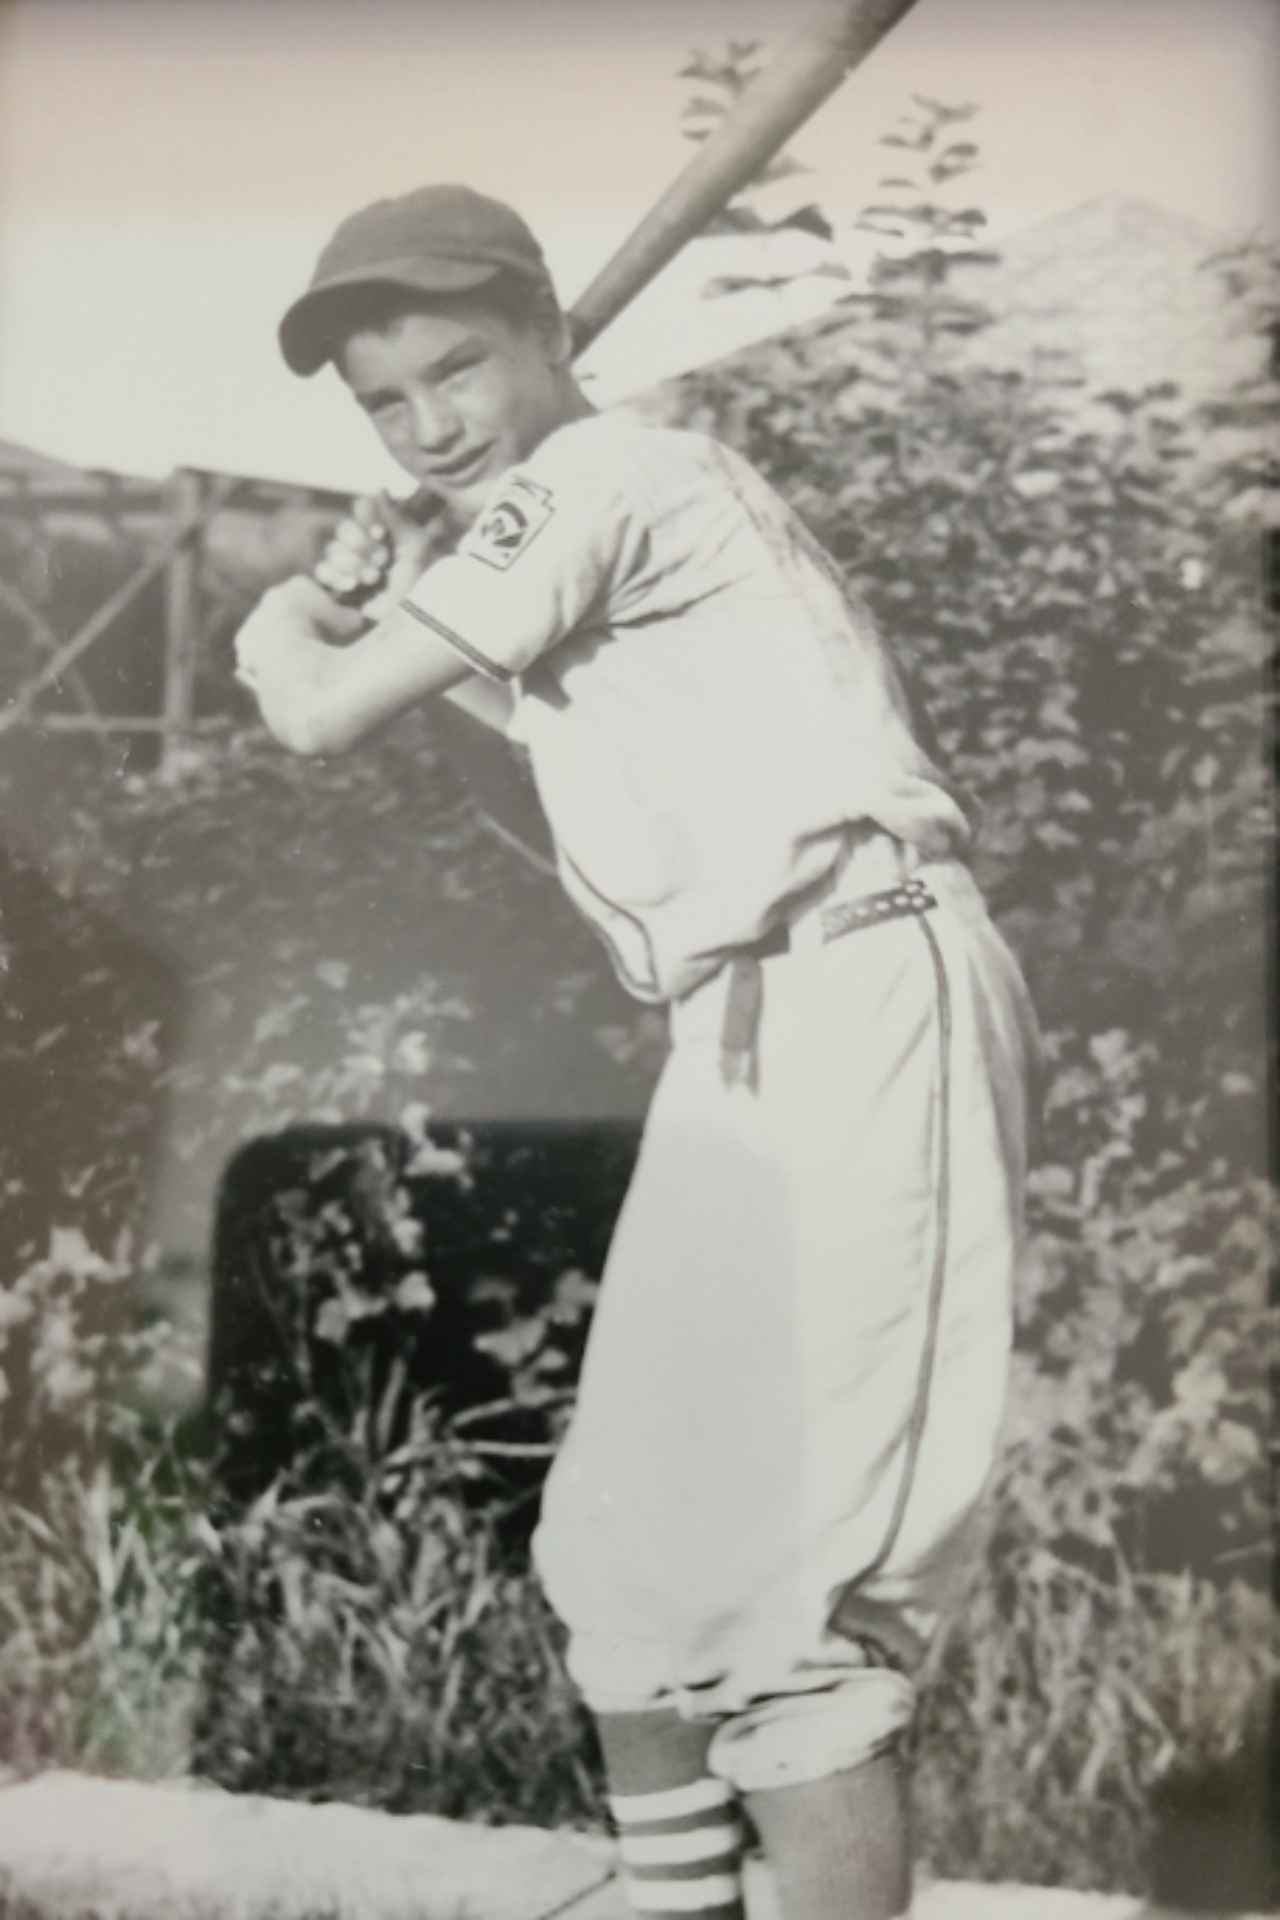 Foto de Jim Ward quando mais jovem, jogando baseball